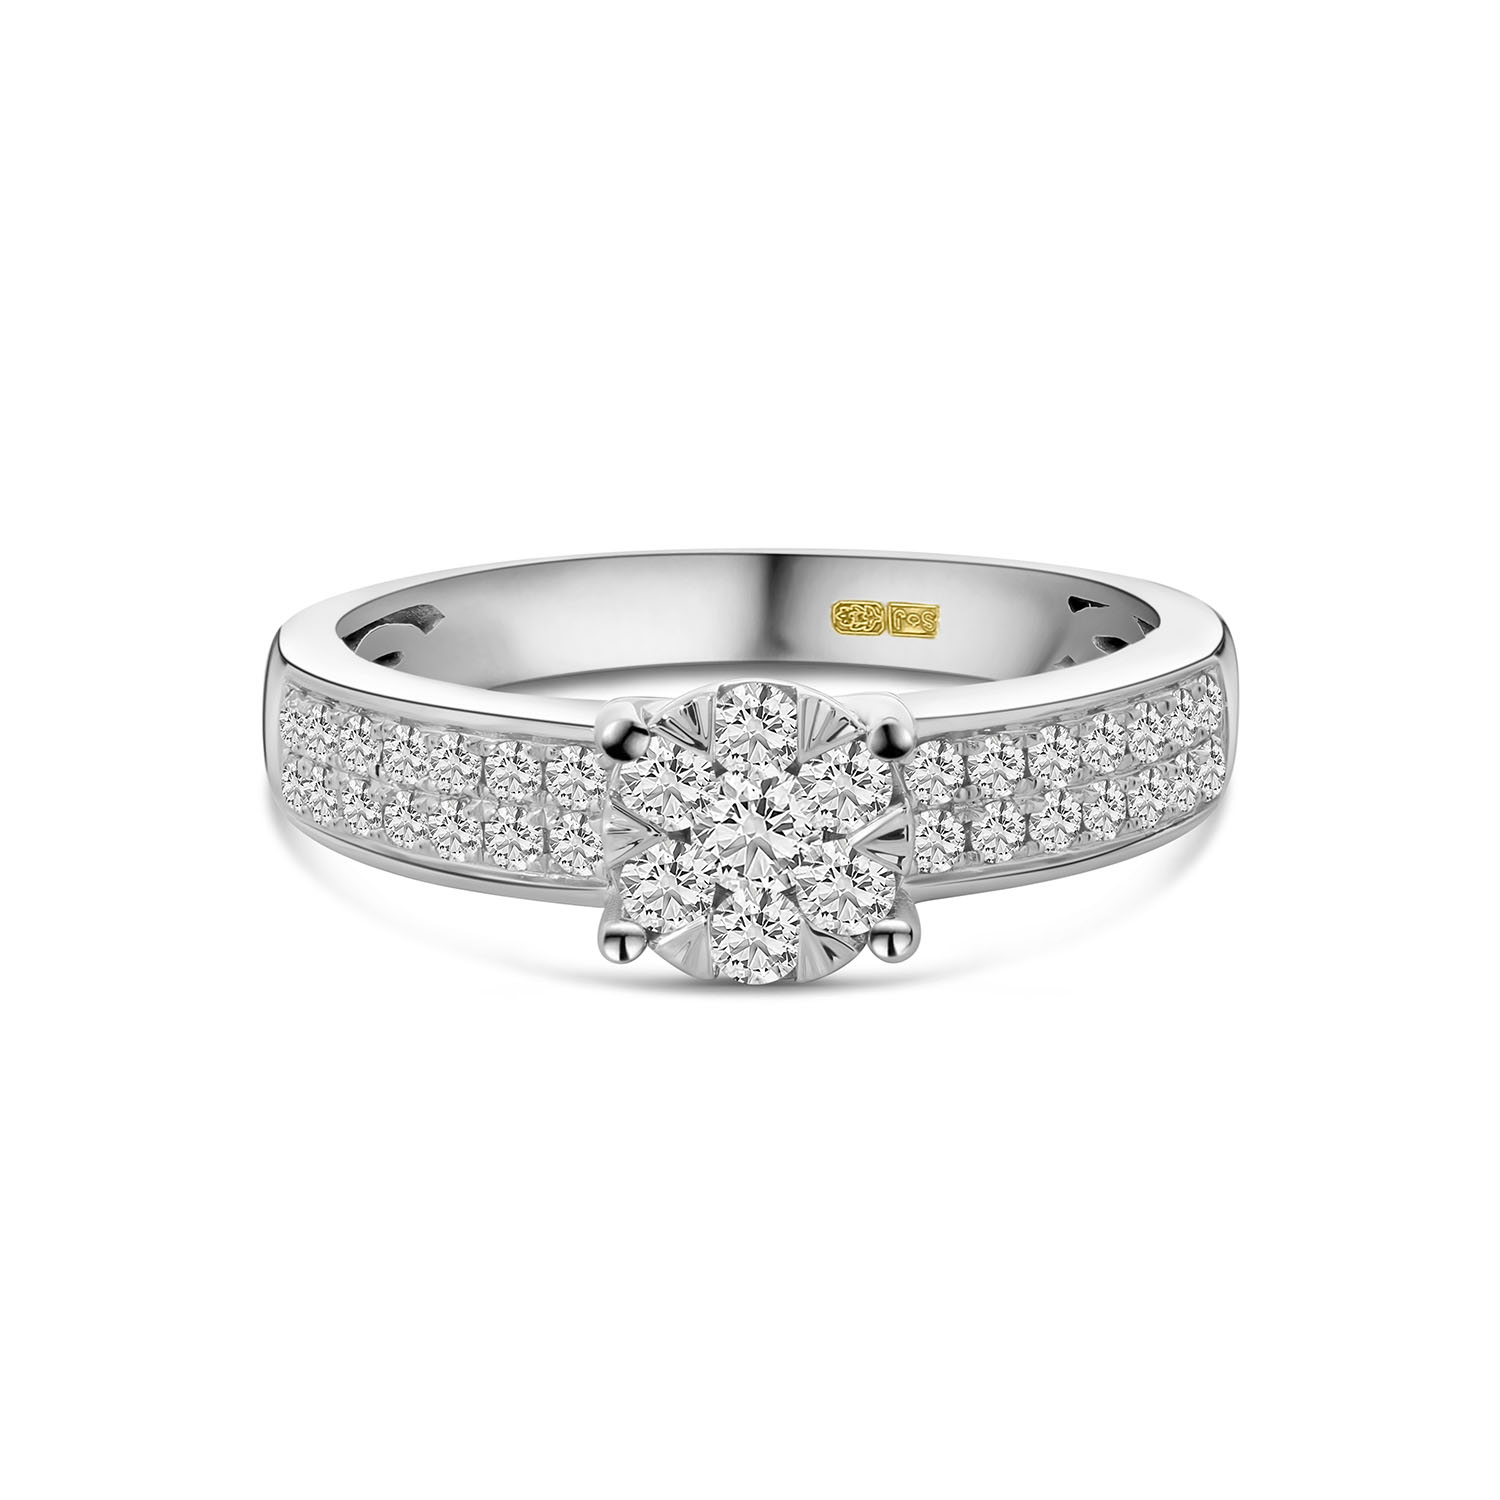 Witgouden ring pave met lab grown diamanten R092-59714R023-LG-W